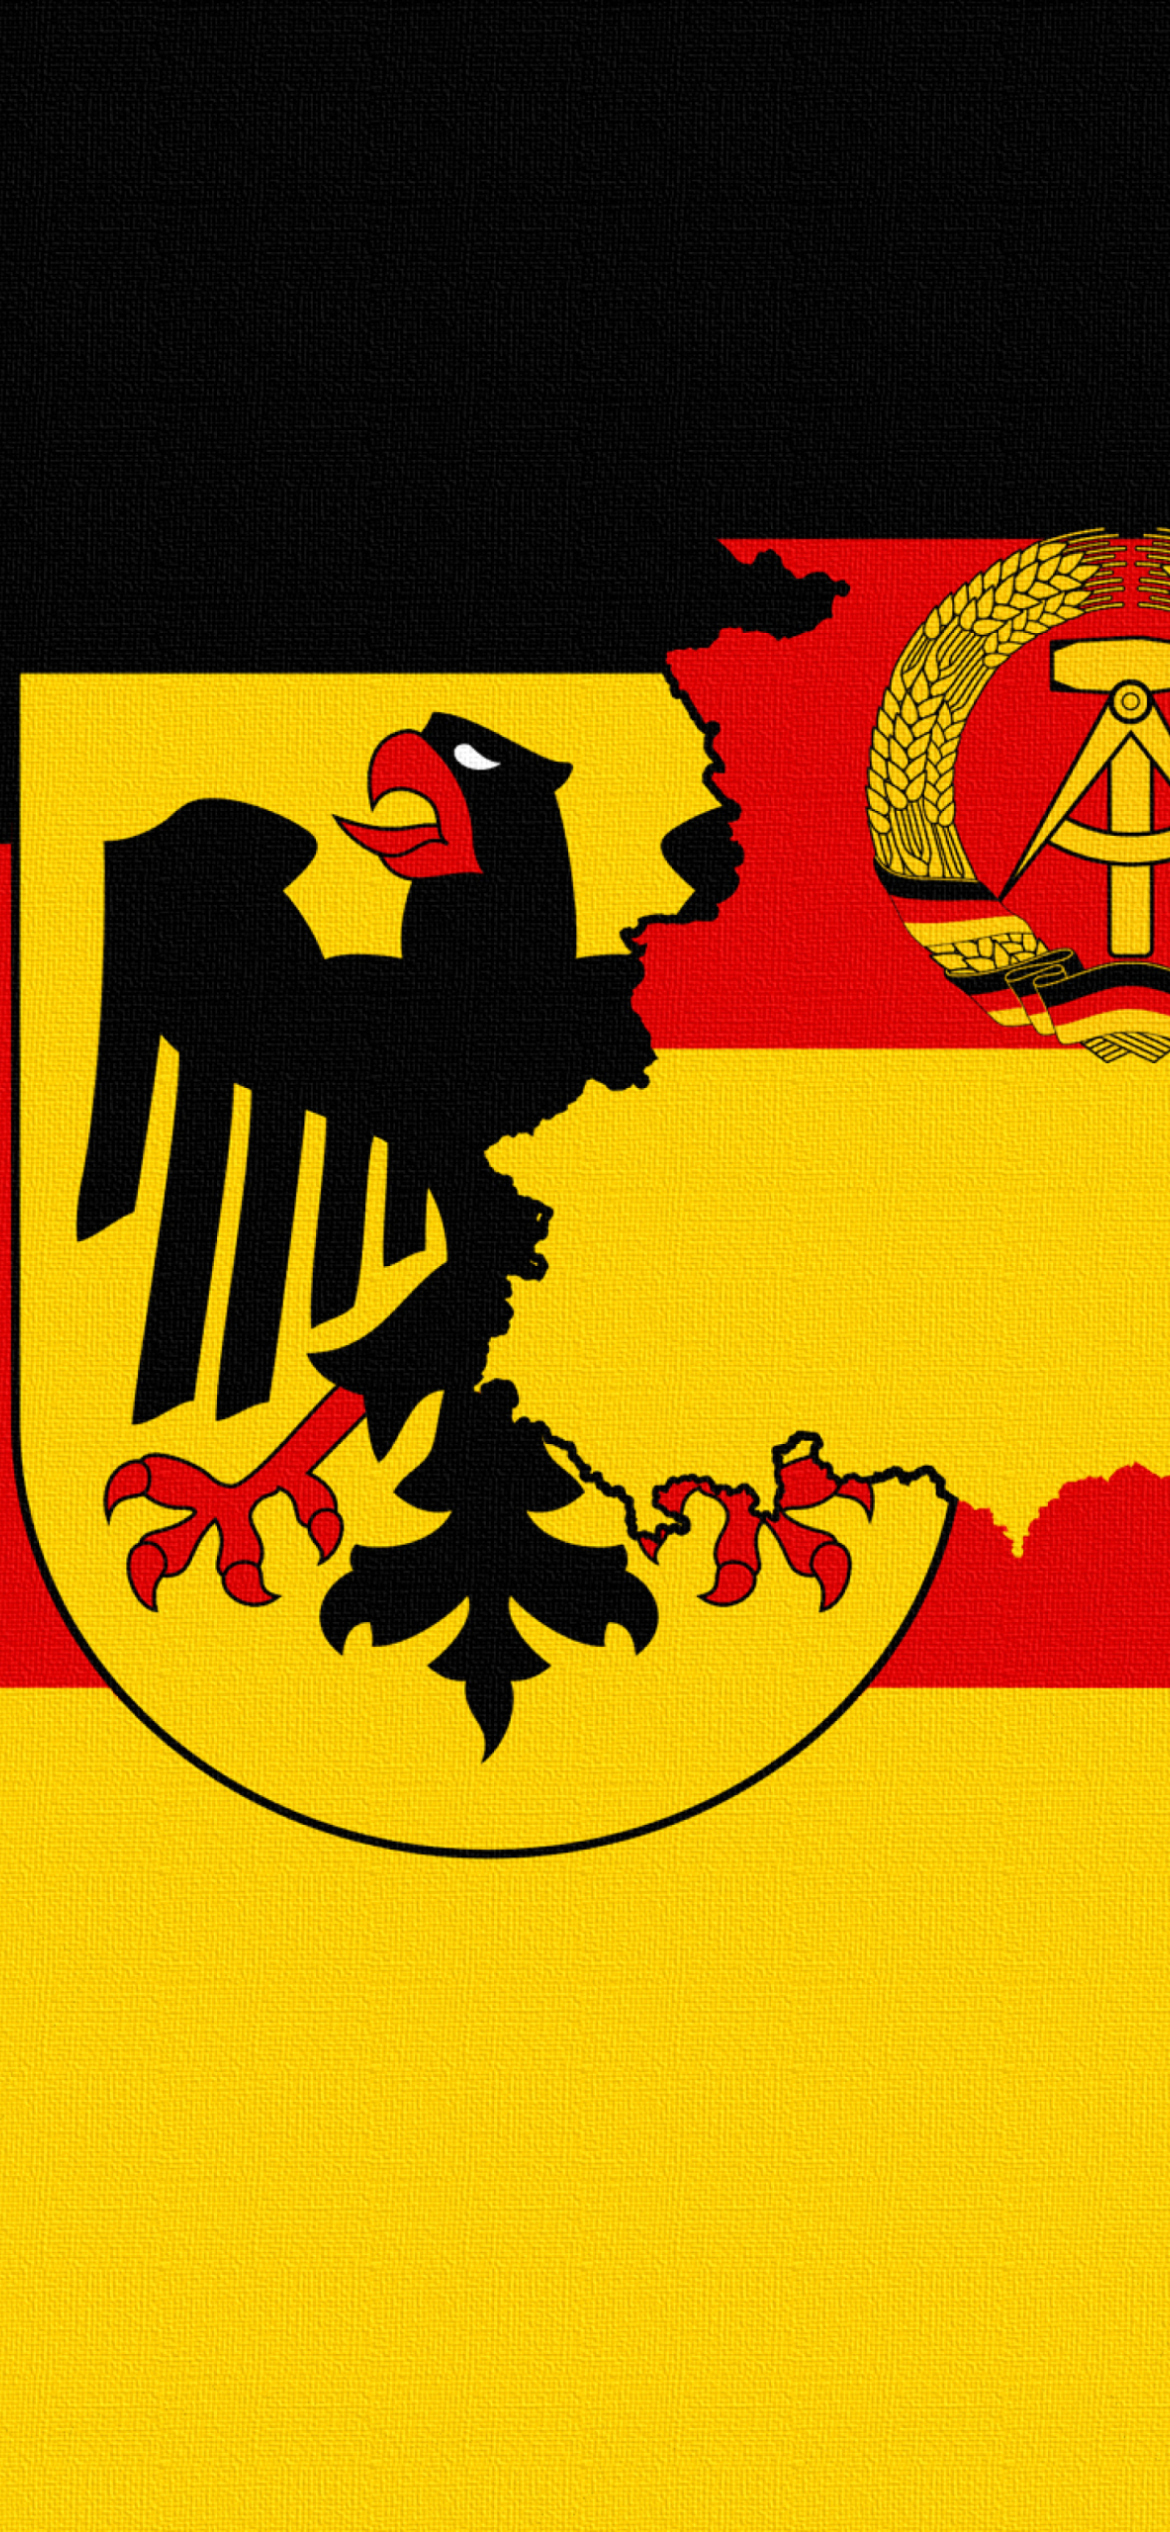 Sfondi German Flag With Eagle Emblem 1170x2532